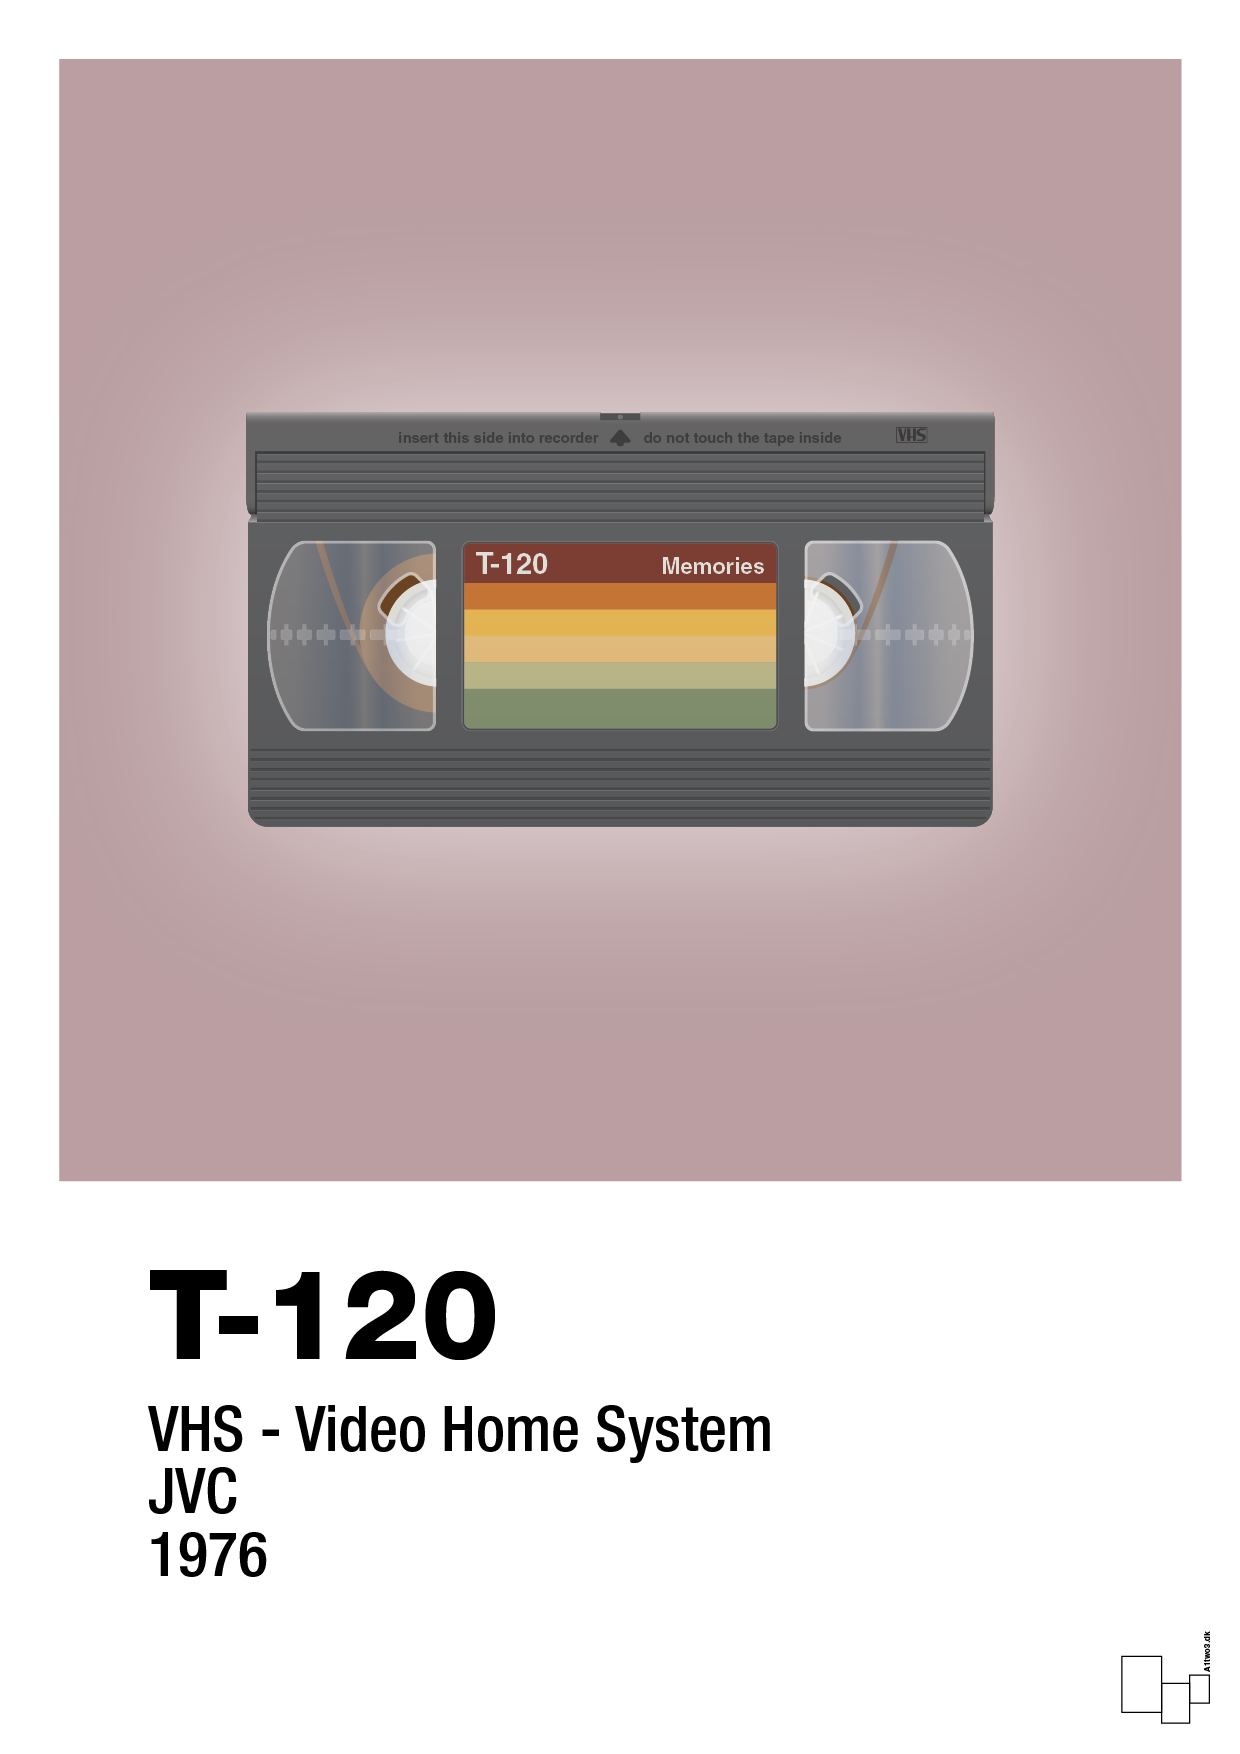 videobånd t-120 - Plakat med Grafik i Light Rose